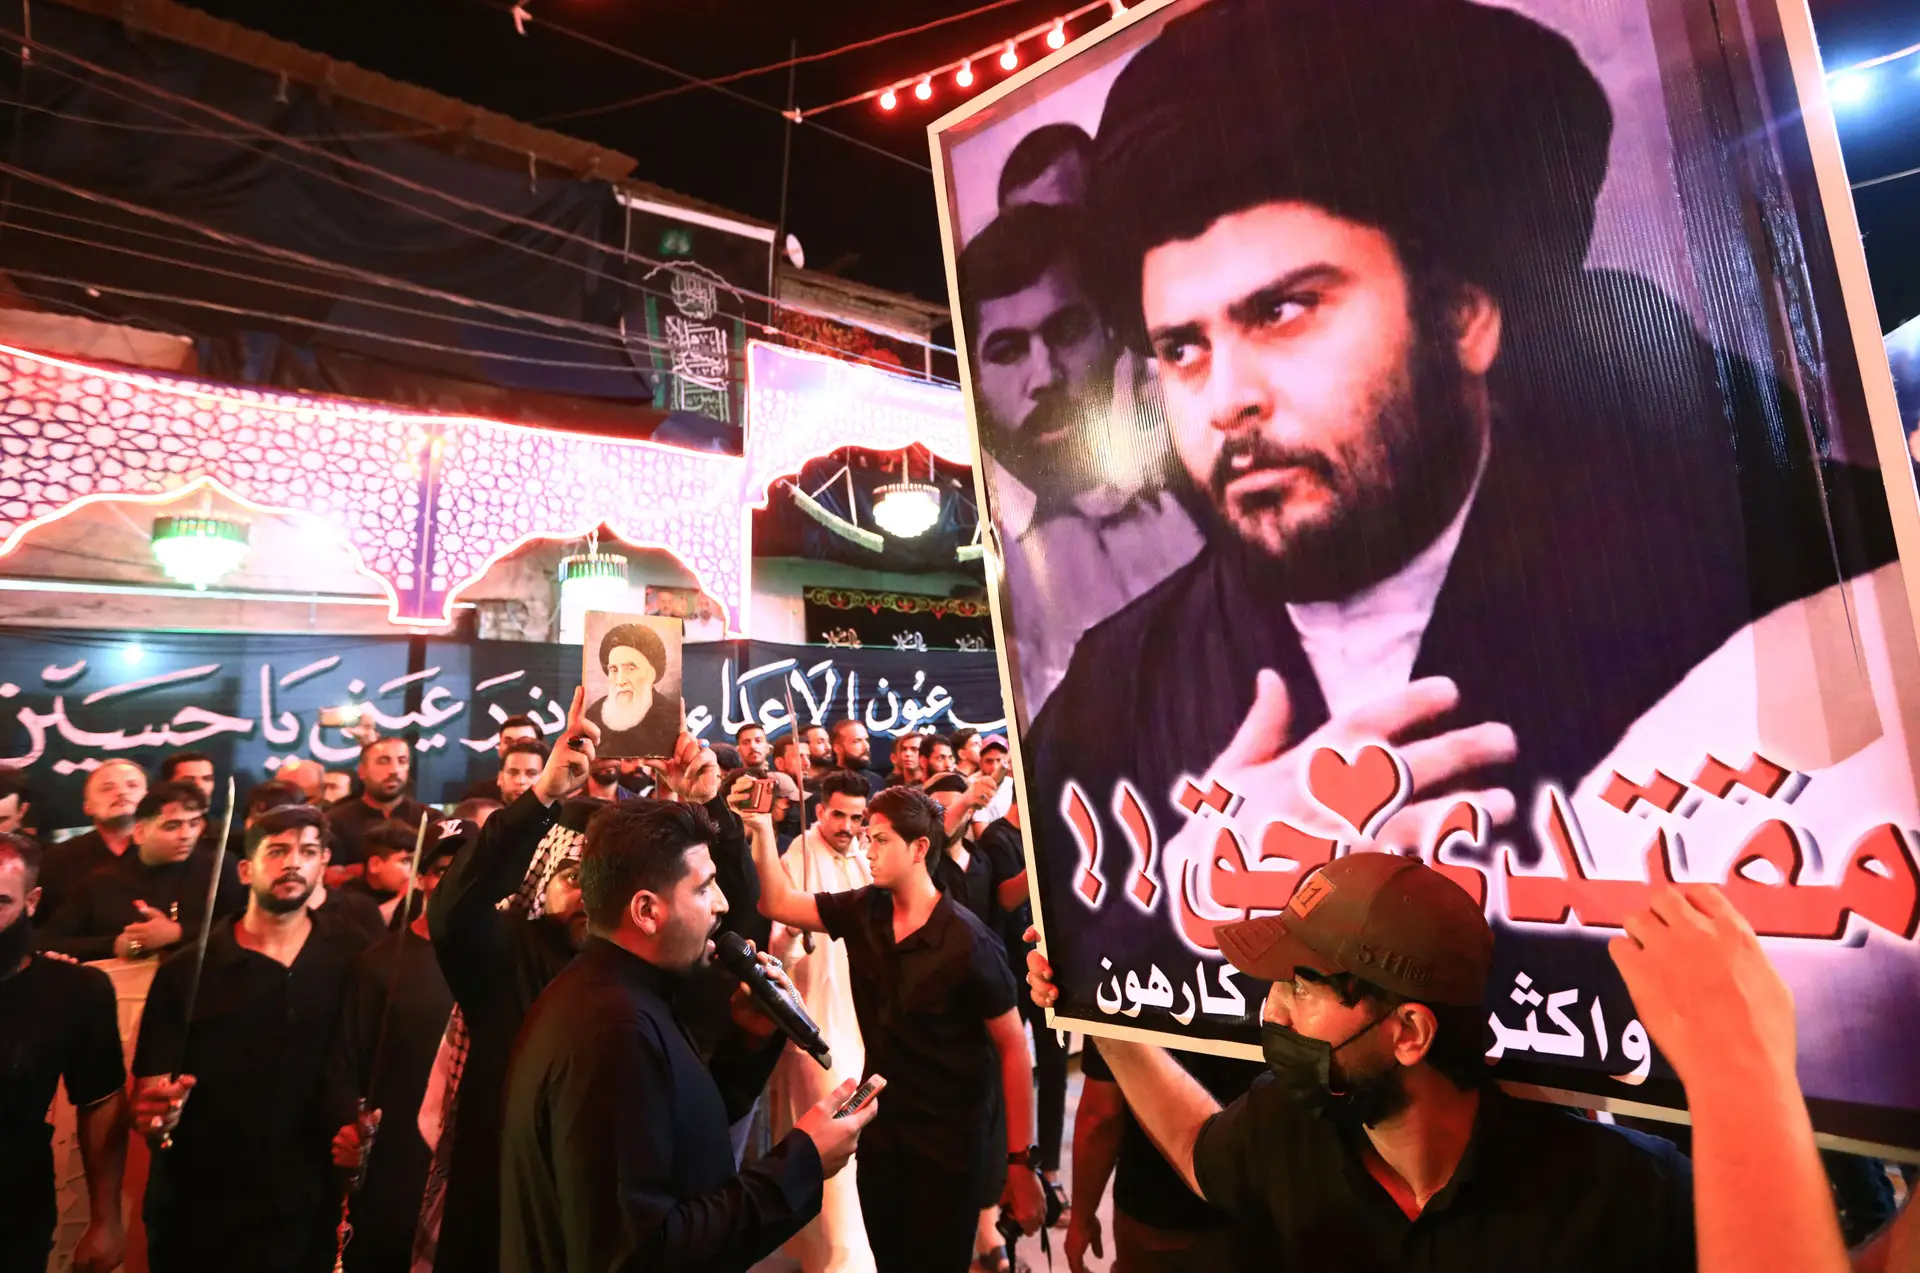 Iraque: Líder xiita Moqtada al-Sadr impõe prazo para dissolução do parlamento